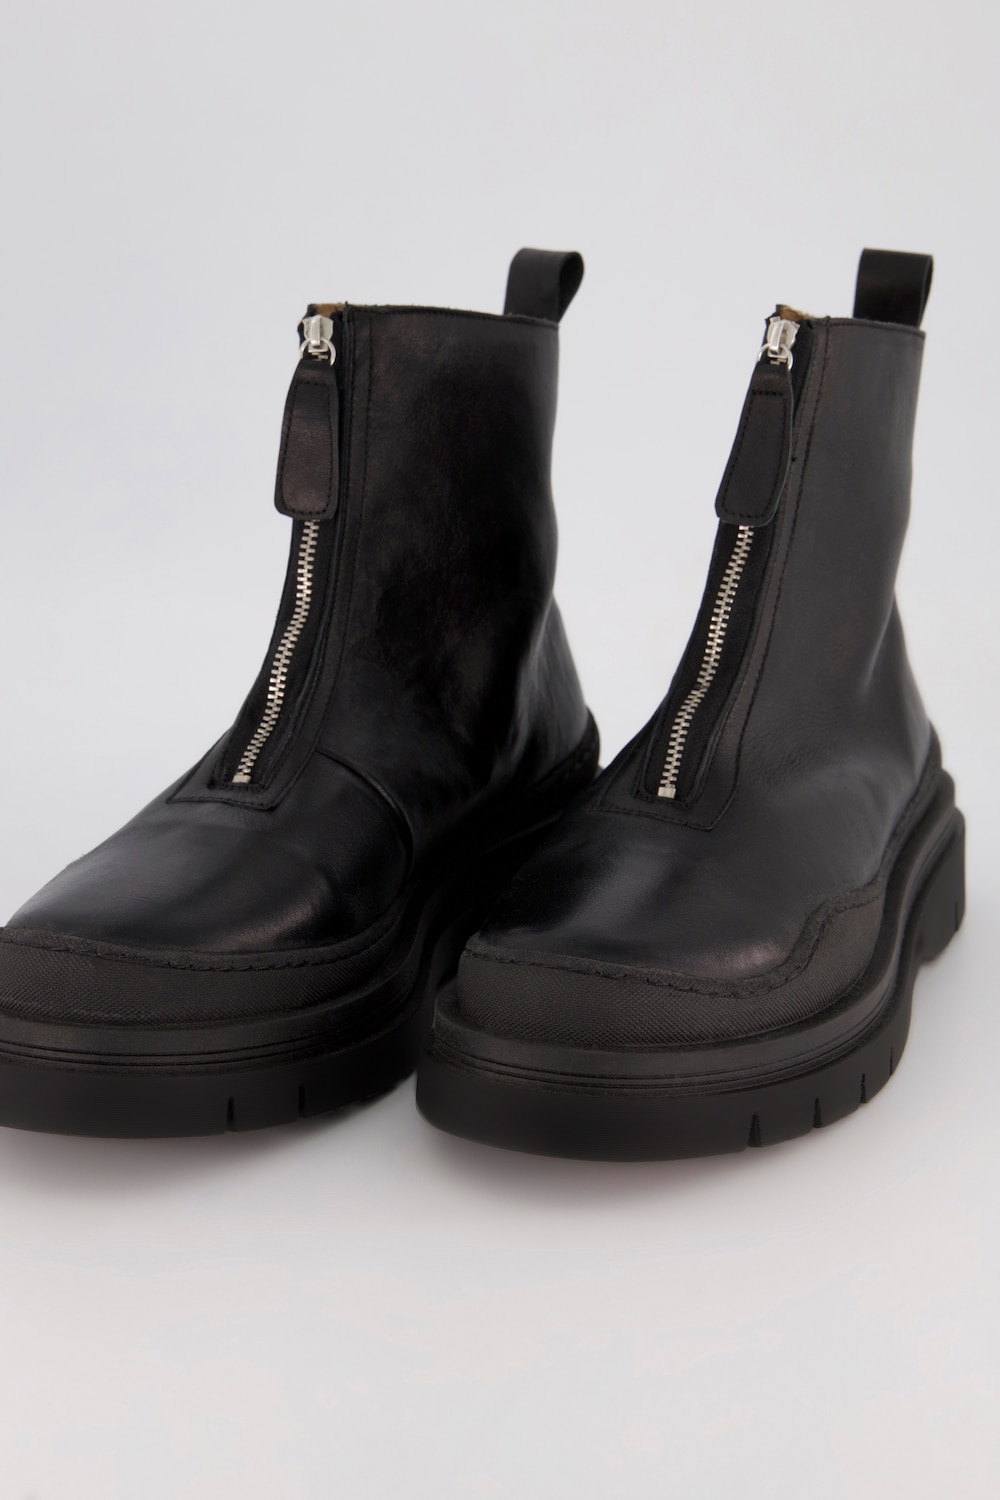 Leder-Boots, Damen, schwarz, Größe: 41, Leder/Baumwolle, Ulla Popken von Ulla Popken